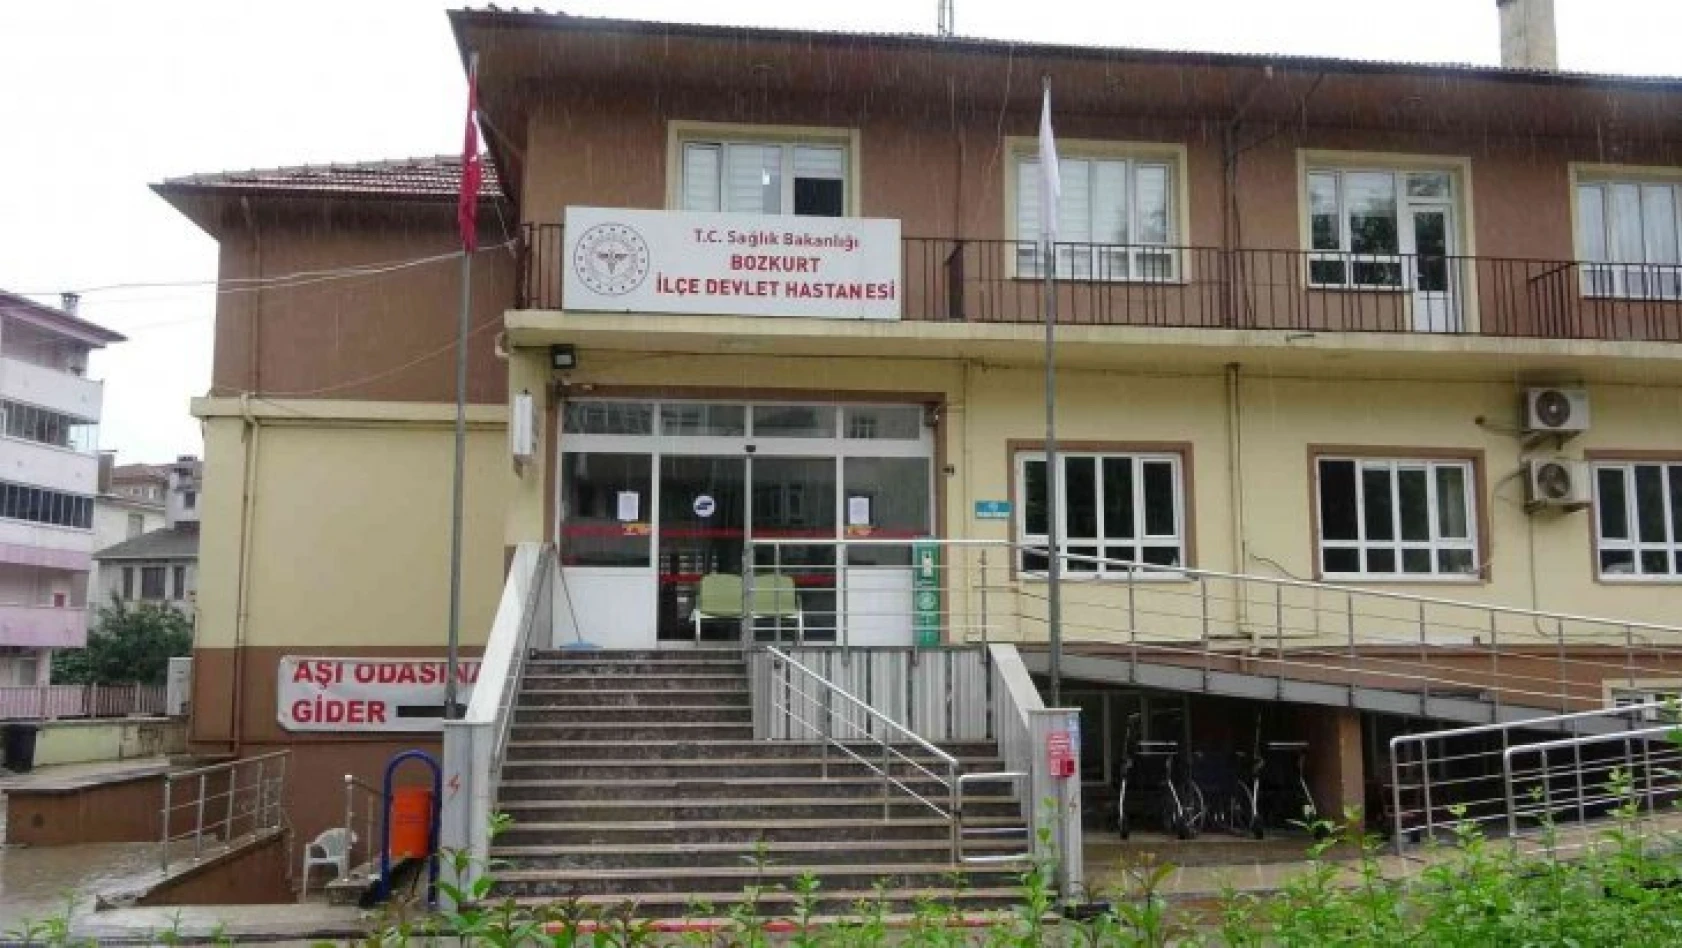 Bozkurt'ta ilçe devlet hastanesi boşaltıldı